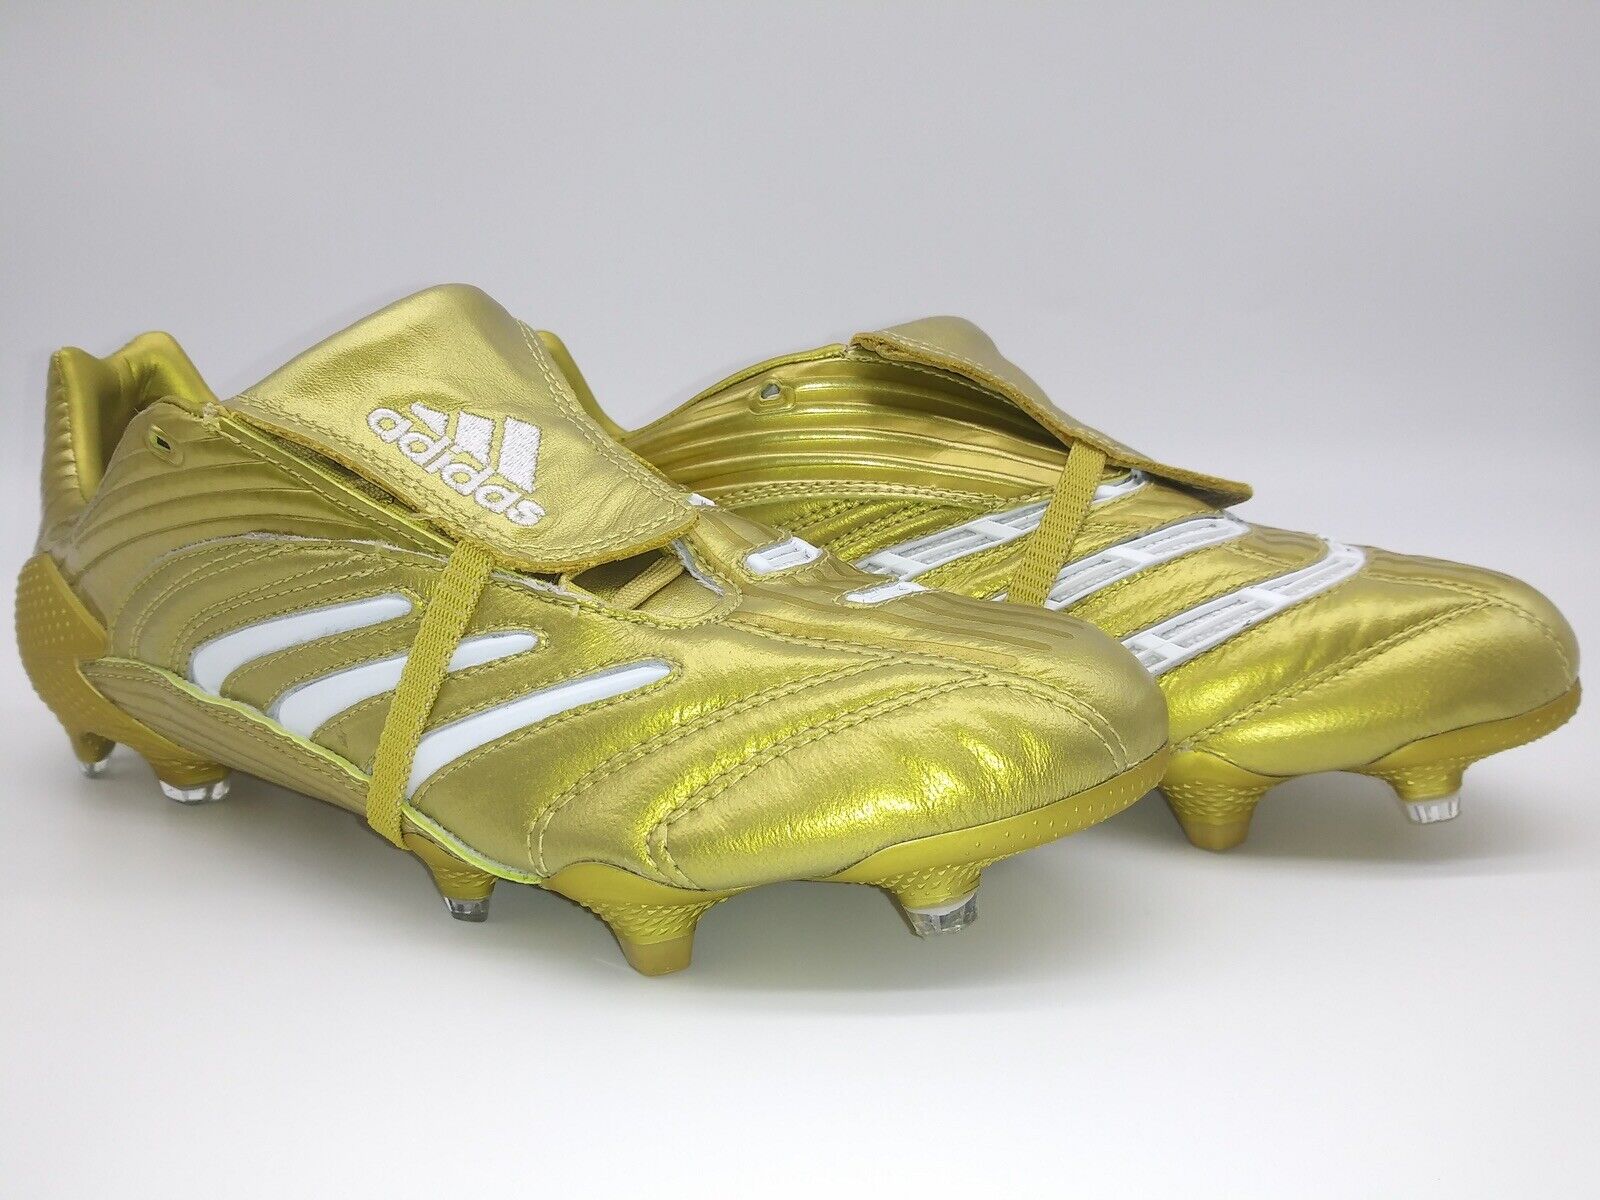 Adidas Predator Absolute FG Gold – Footwear